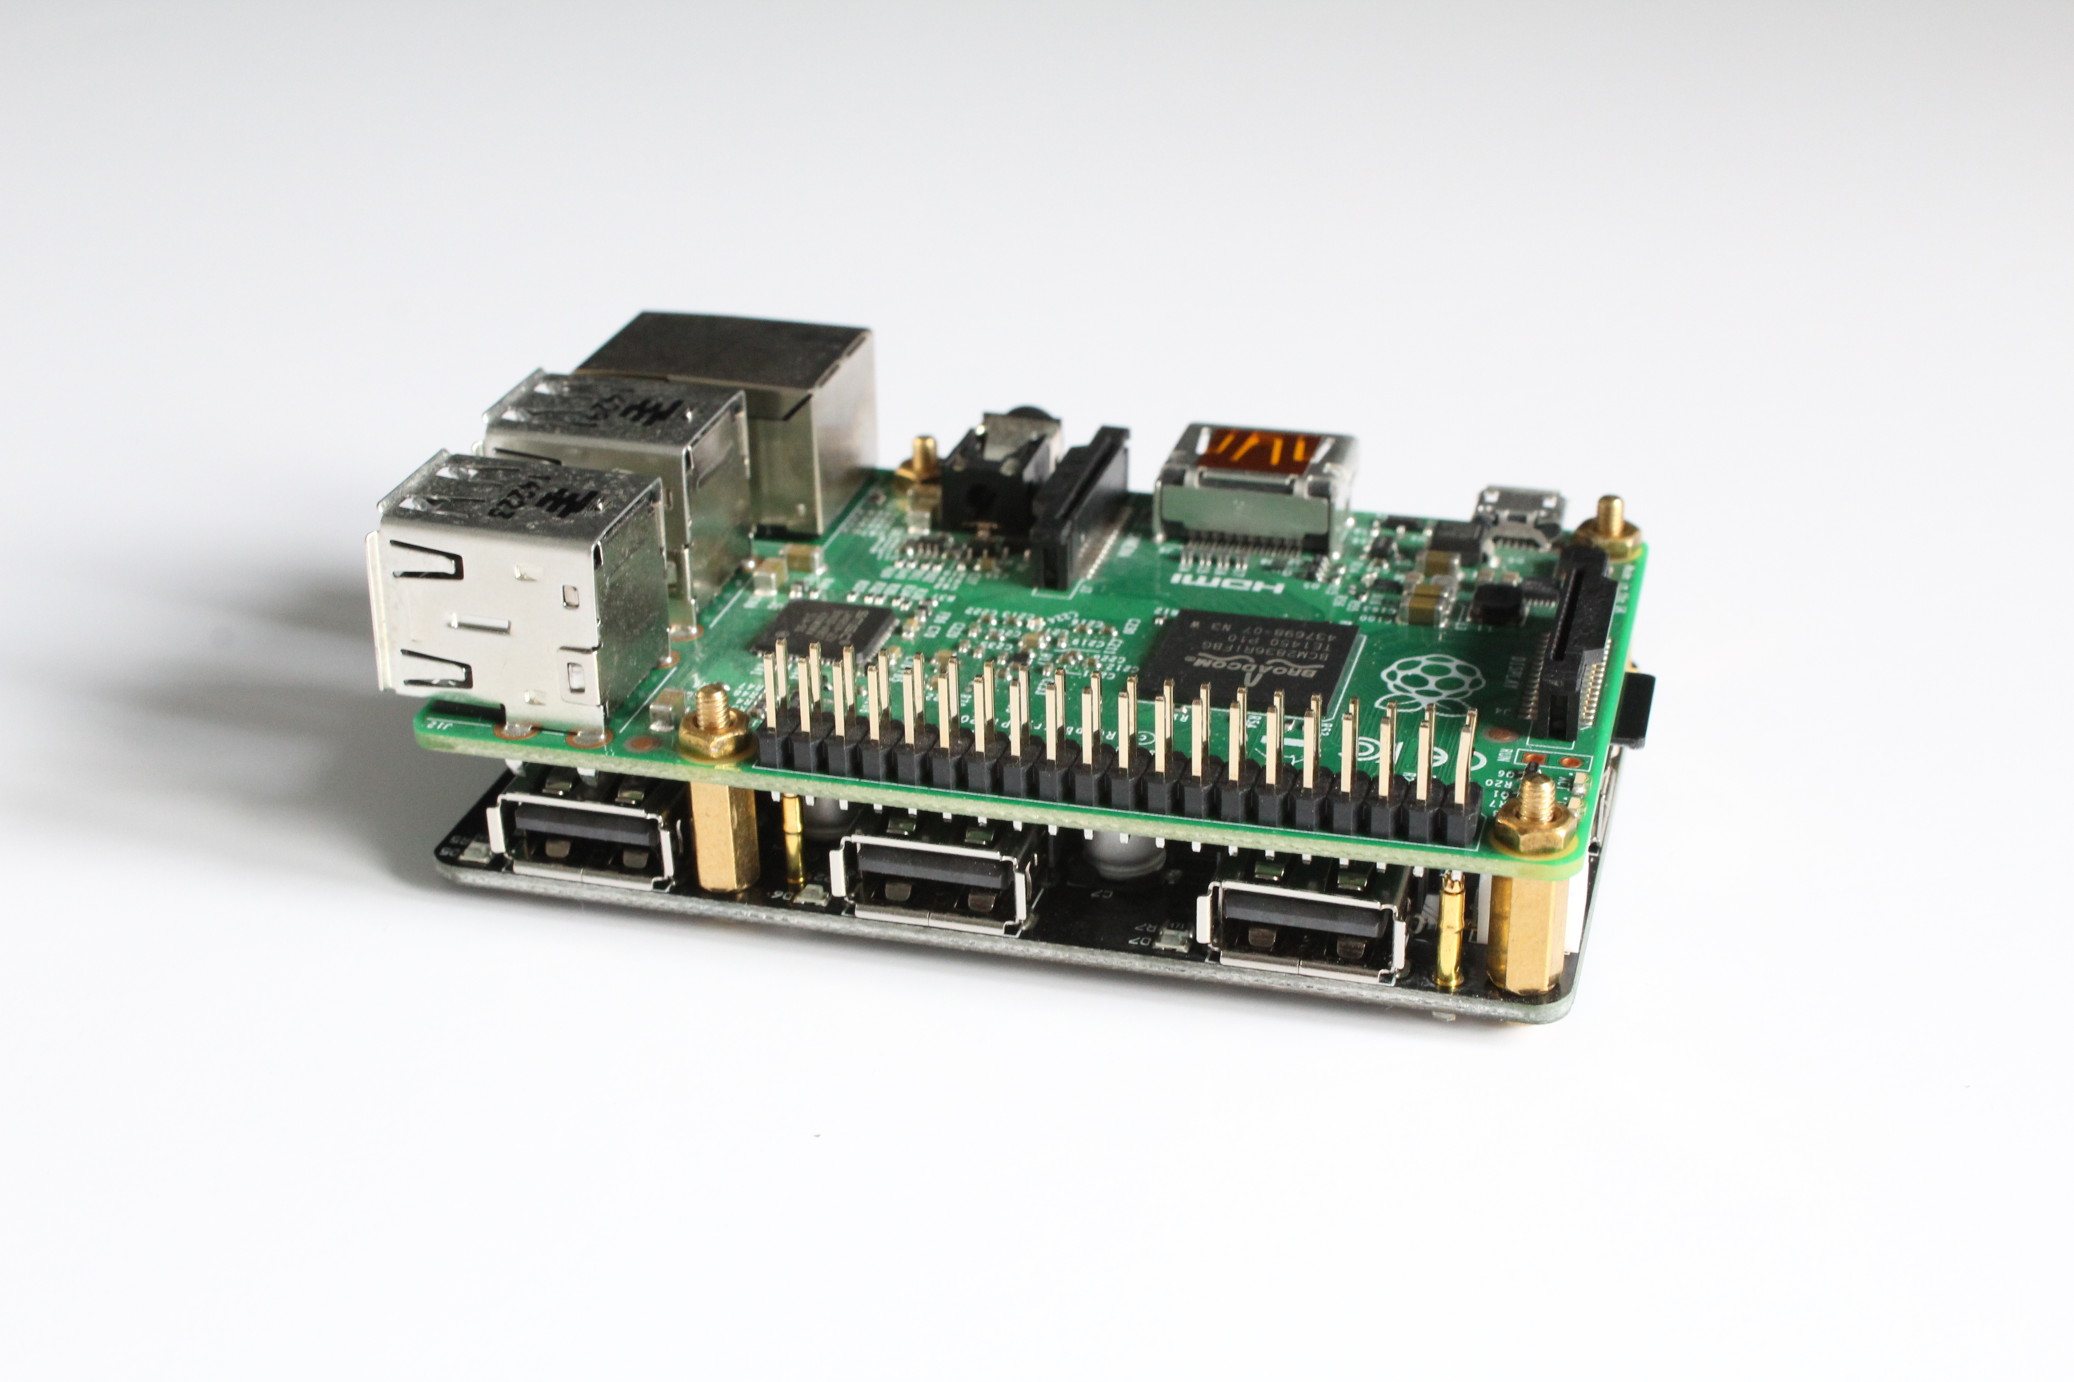 Higgins Tilbagekaldelse Løfte 7-Port USB Hub For Raspberry Pi - Raspberry Pi Spy